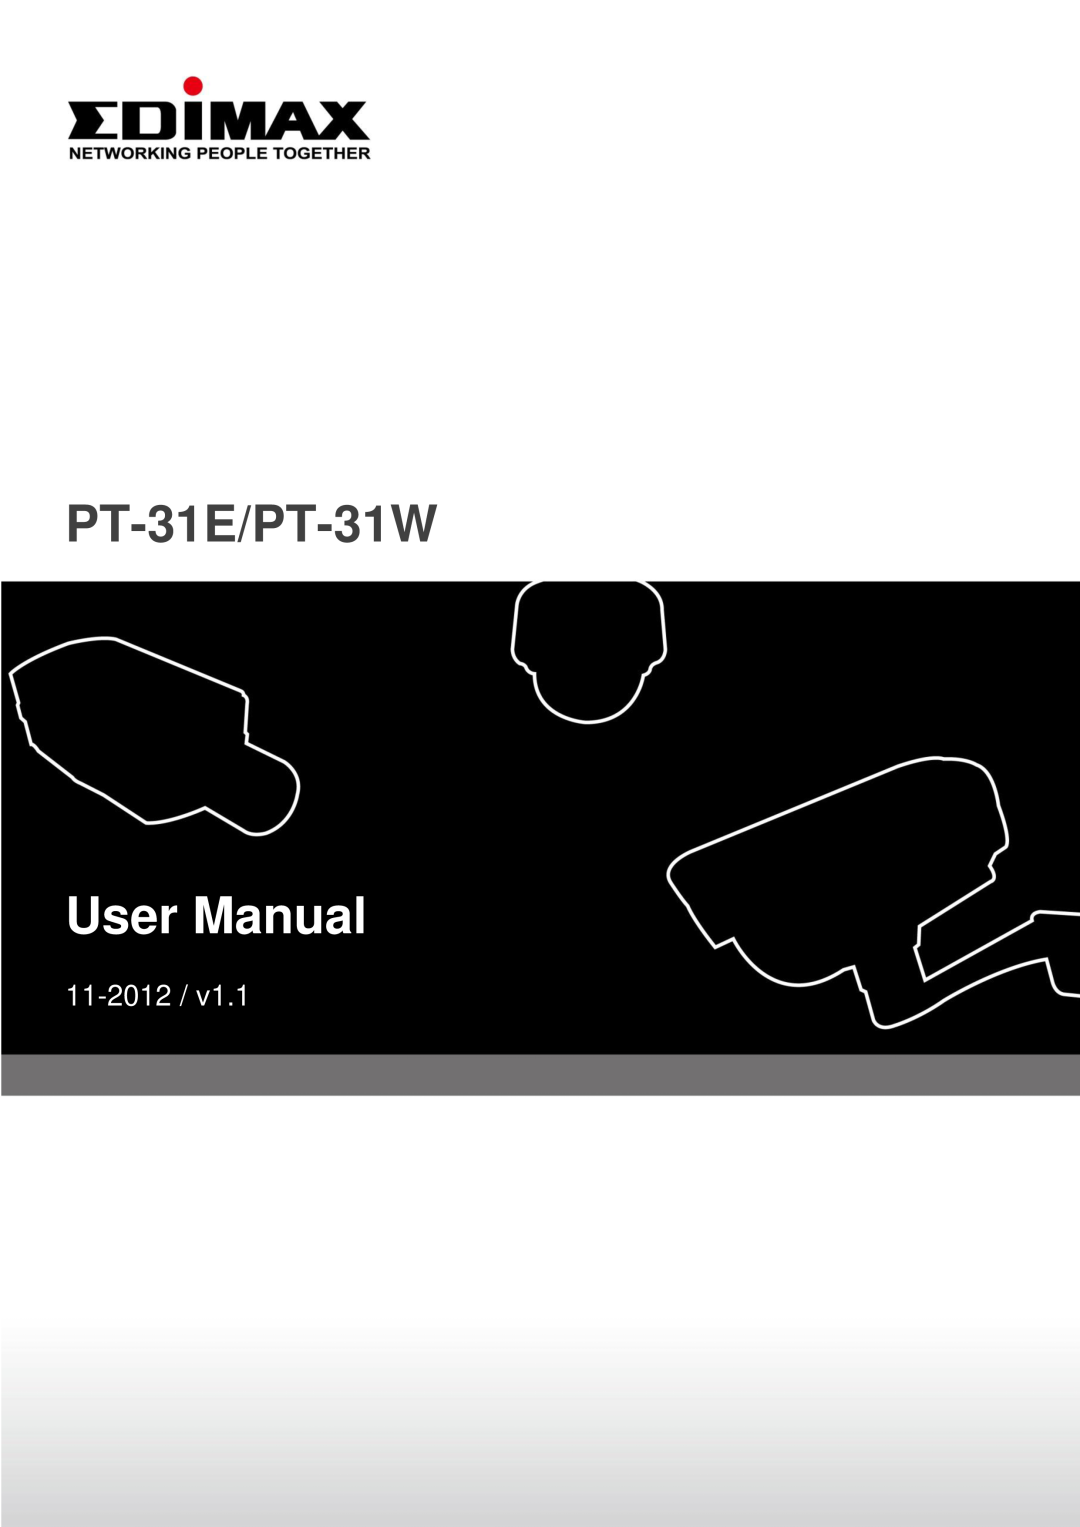 Edimax Technology user manual PT-31E/PT-31W, User Manual, 11-2012 /v1.1 